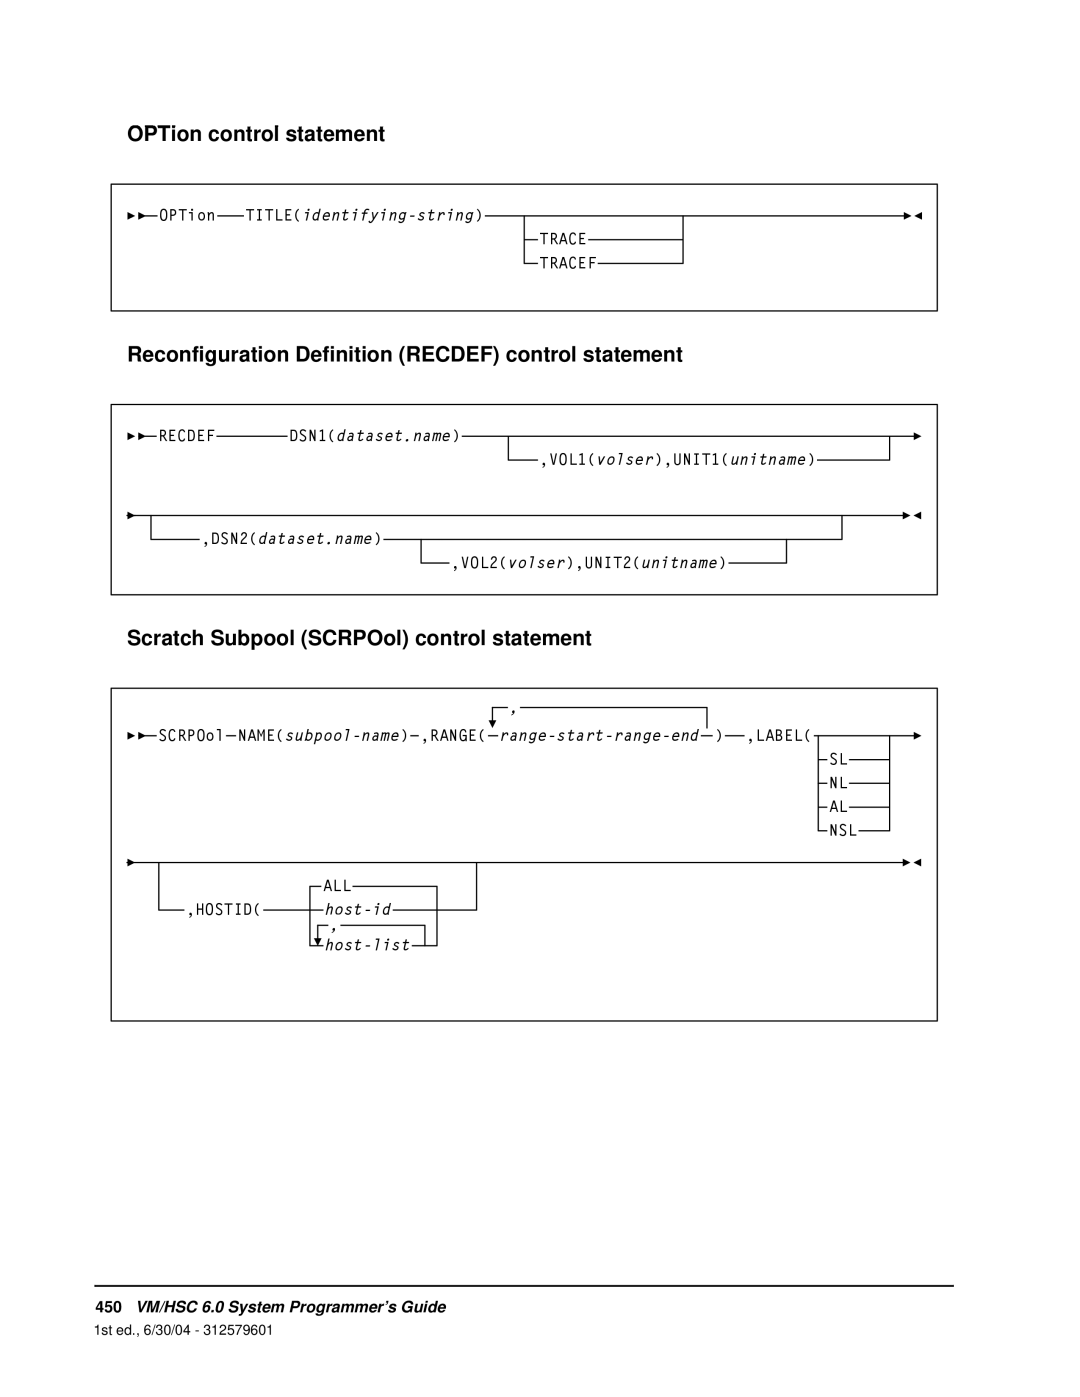 StorageTek OPTion control statement, Scratch Subpool SCRPOol control statement, 450VM/HSC 6.0 System Programmer’s Guide 